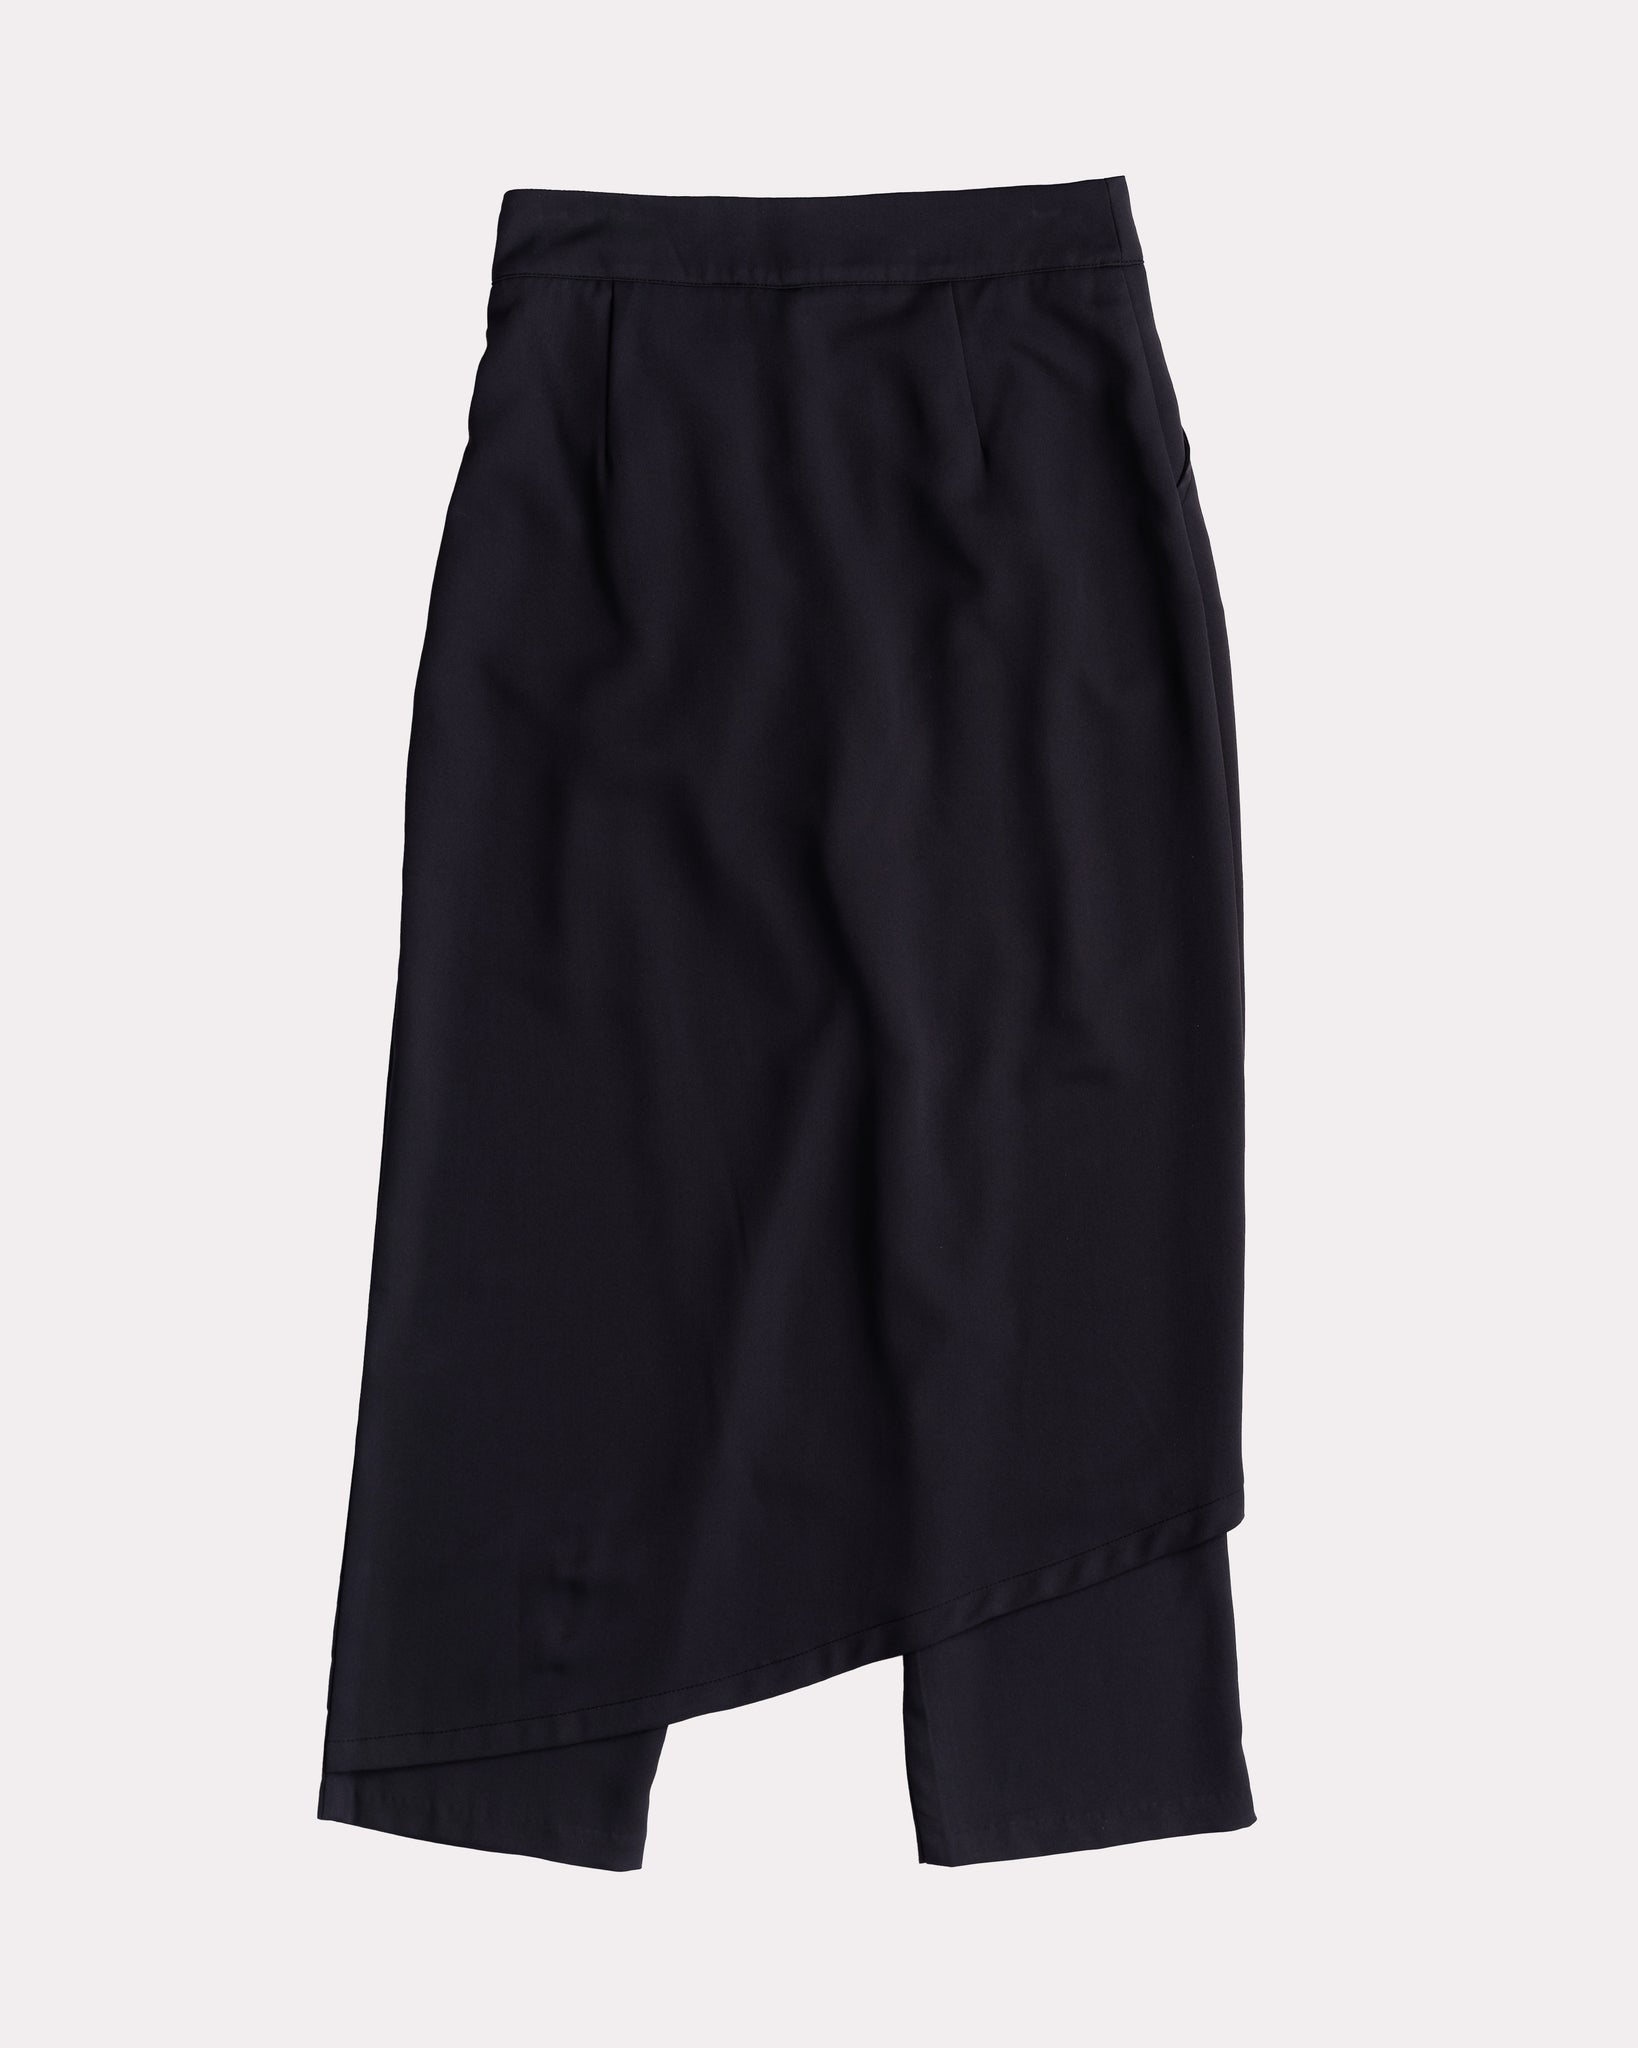 Asymmetrical Skirt Pants (Navy)